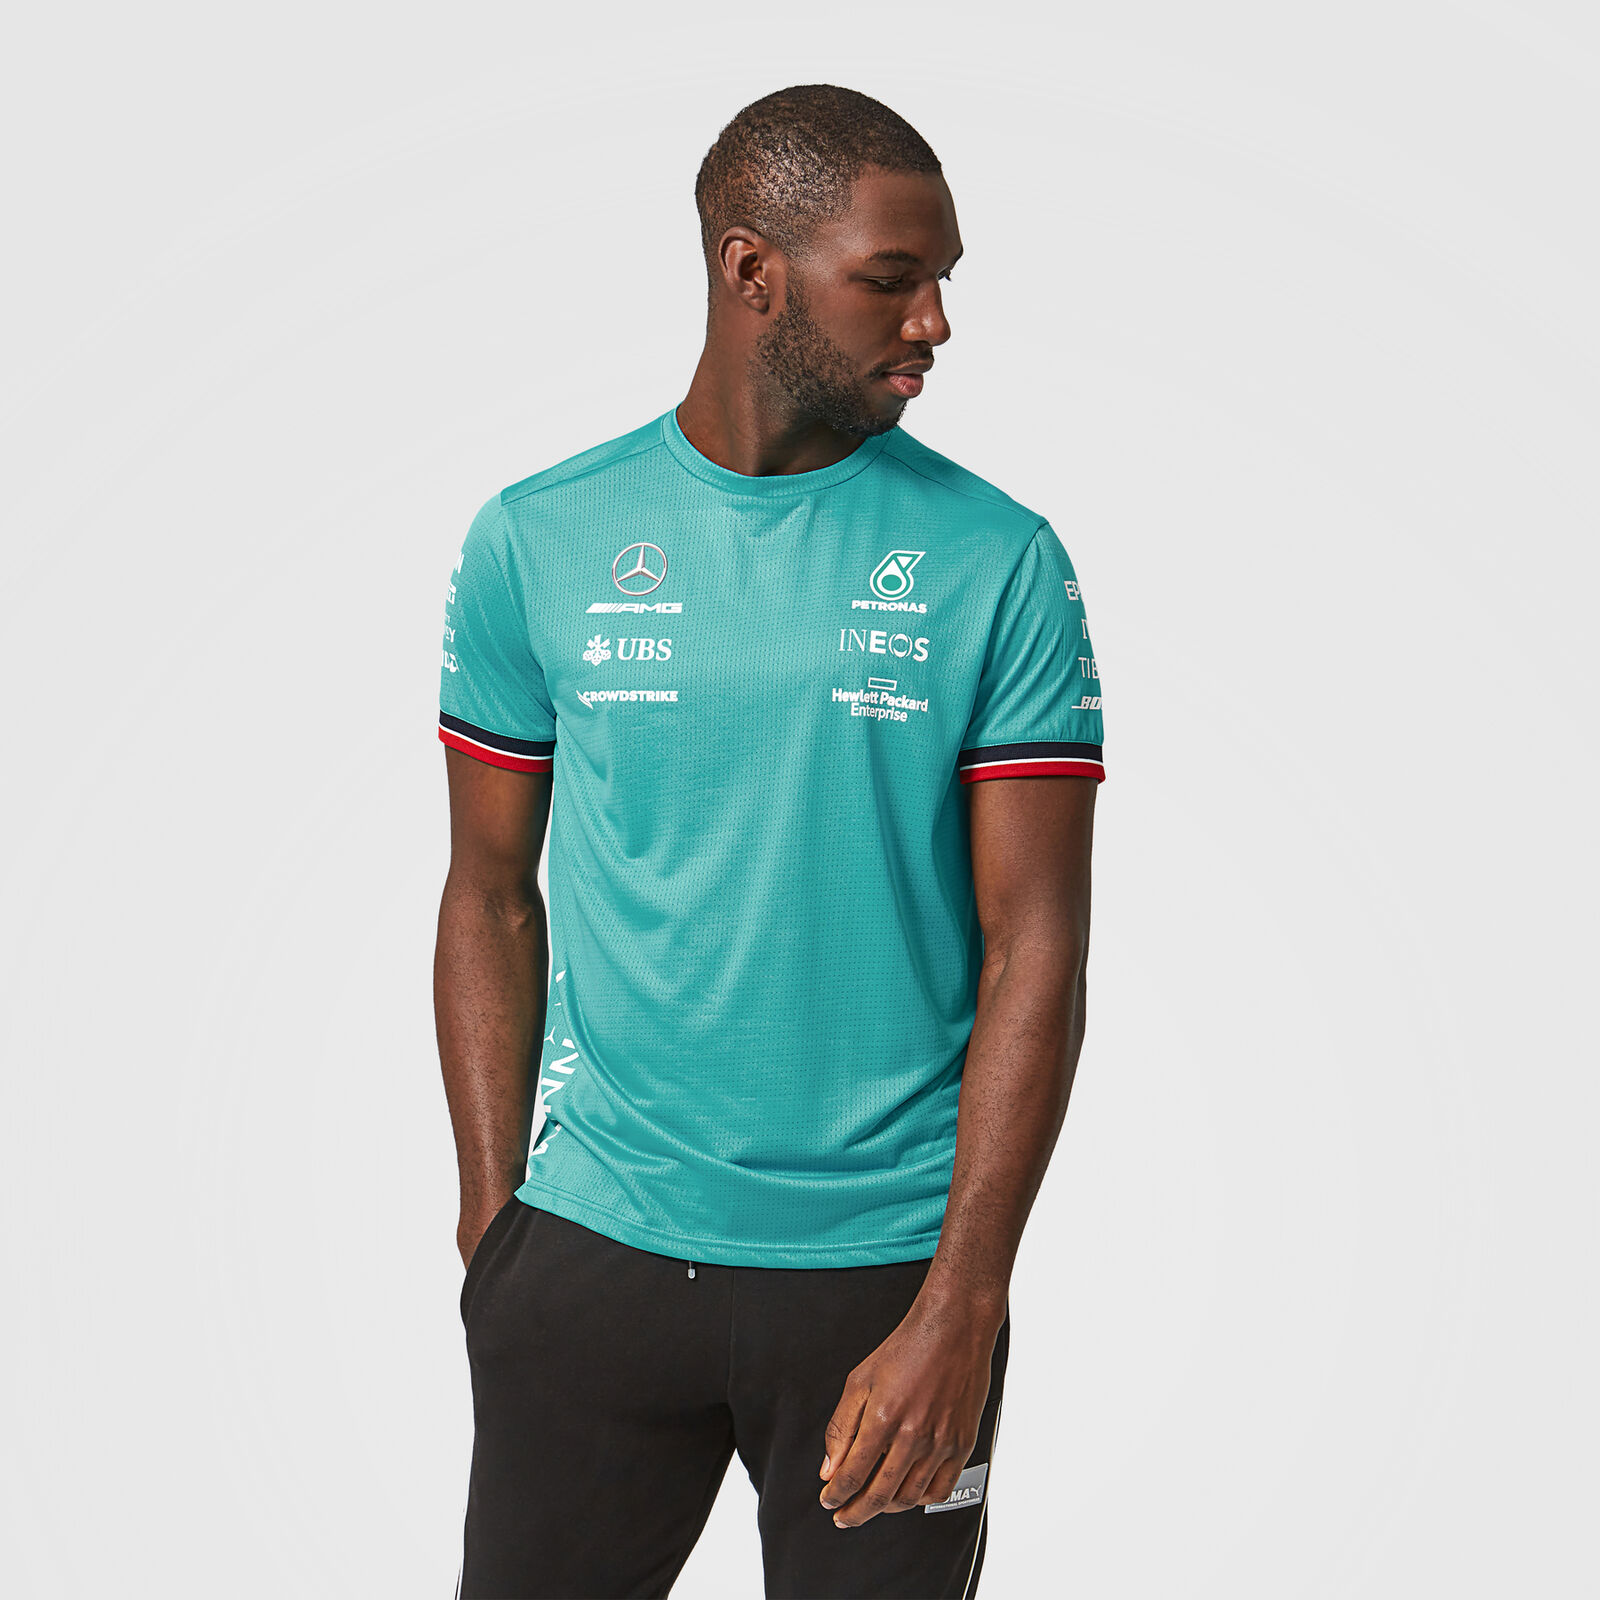 2021 Team Race Winner T-Shirt - Petronas For Fans